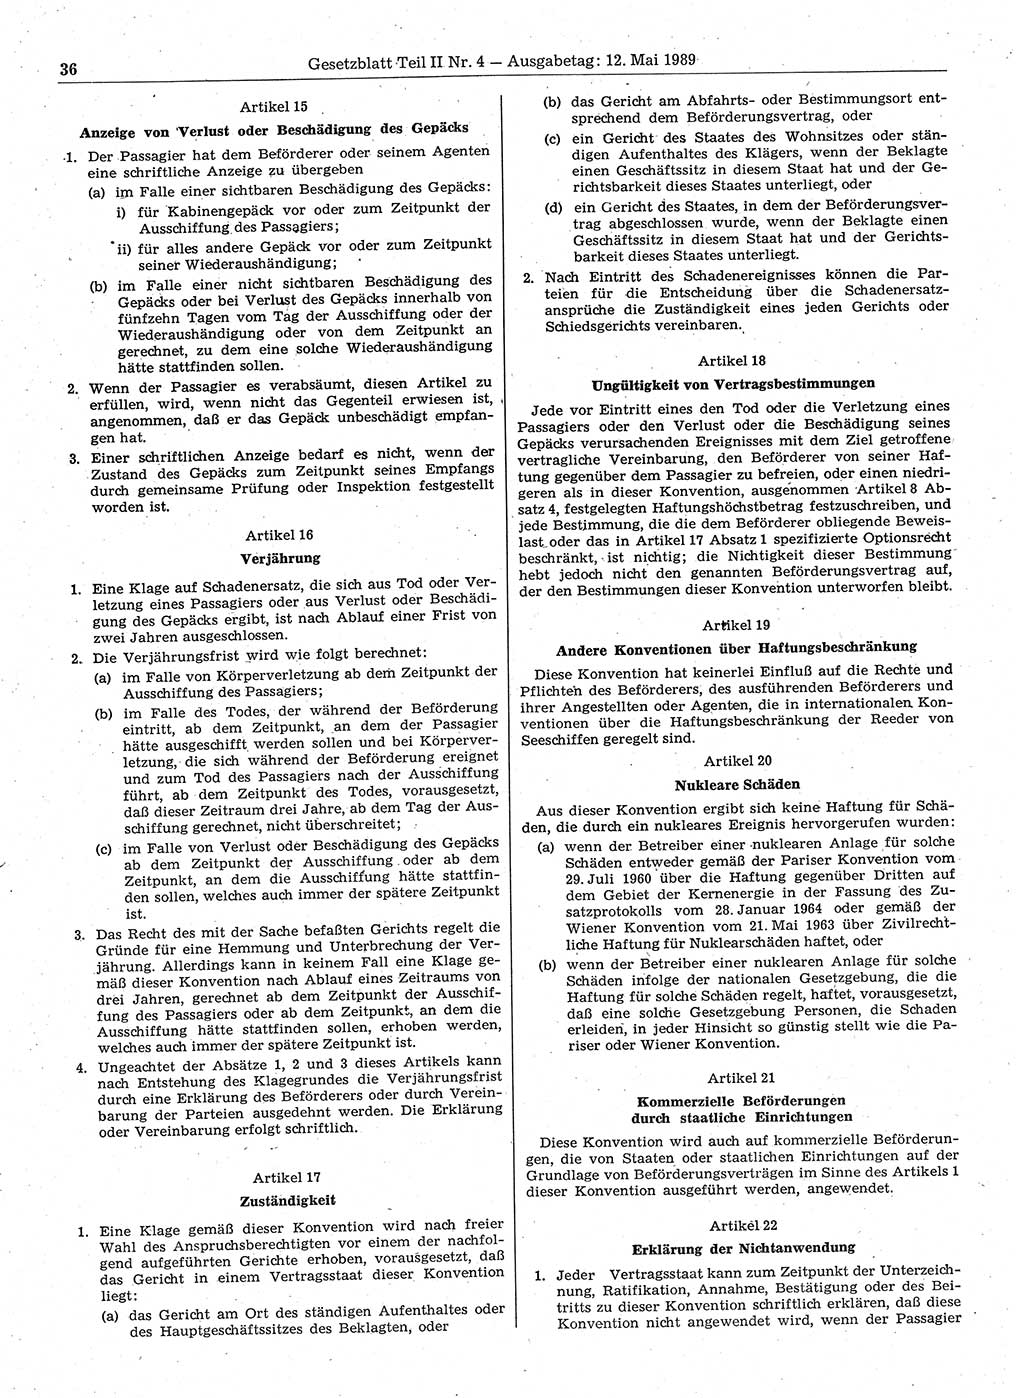 Gesetzblatt (GBl.) der Deutschen Demokratischen Republik (DDR) Teil ⅠⅠ 1989, Seite 36 (GBl. DDR ⅠⅠ 1989, S. 36)